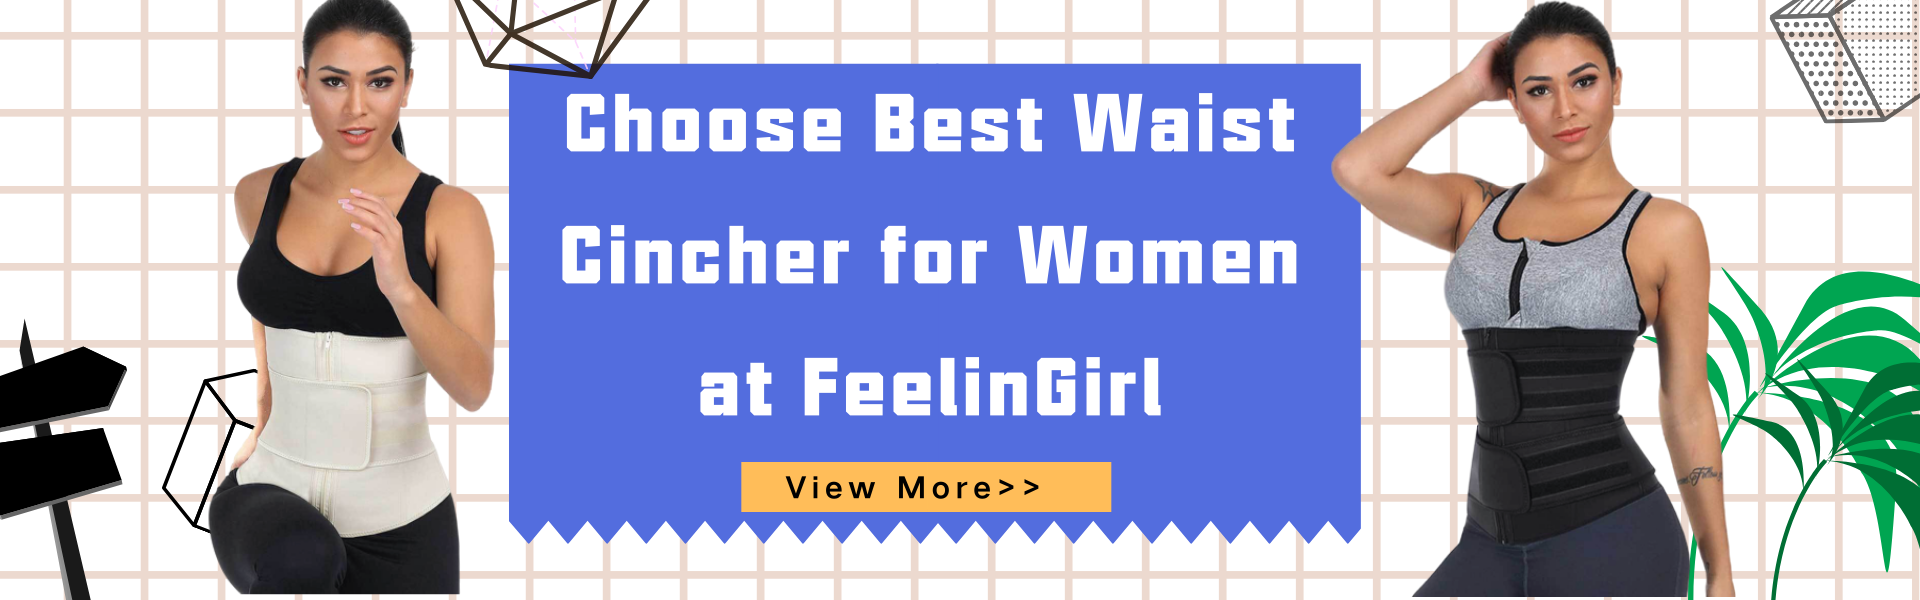 Choose Best Waist Cincher for Women at FeelinGirl